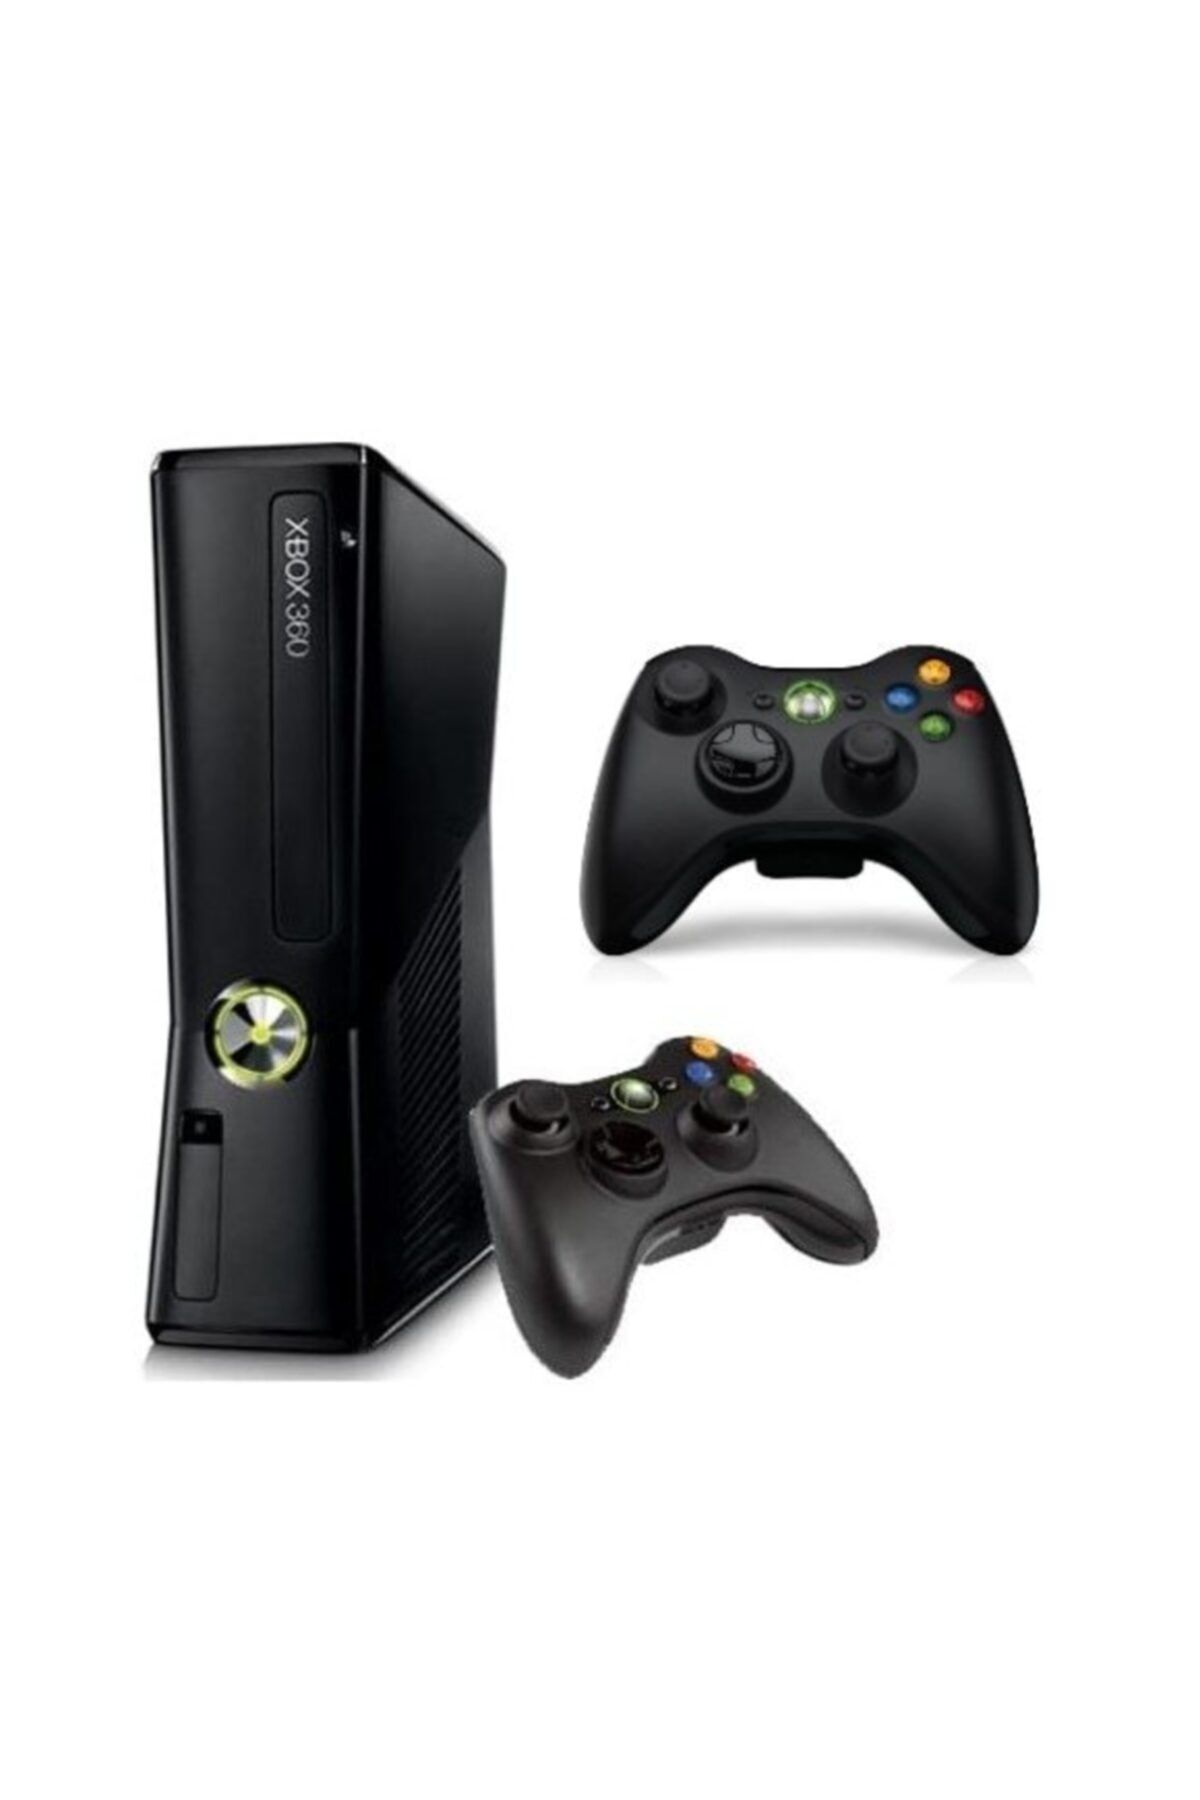 Microsoft Xbox 360 Makina 250 Gb + 2 Kol + Jtaglı 30 Adet Oyun Yüklü